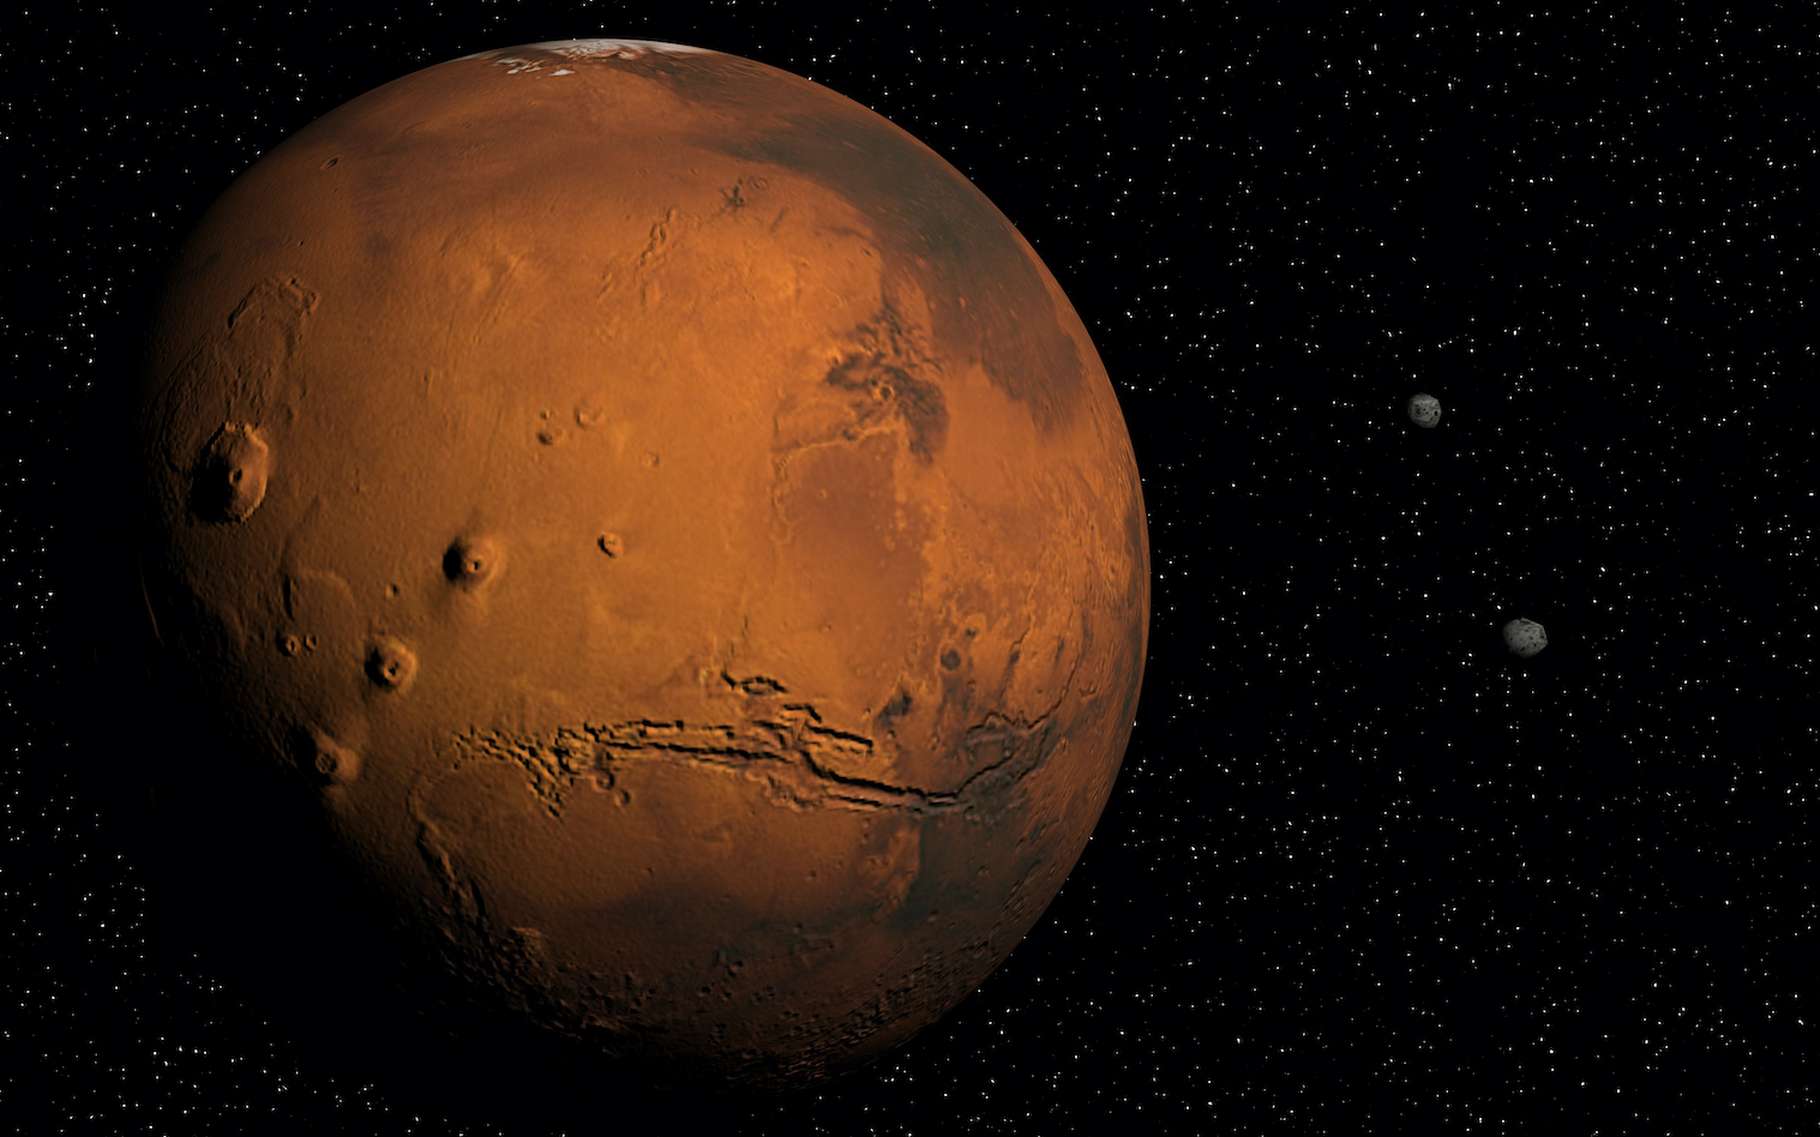 Le rover de la Nasa Perseverance a permis à des chercheurs de mesurer la vitesse du son sur Mars. © Florent DIE, Adobe Stock